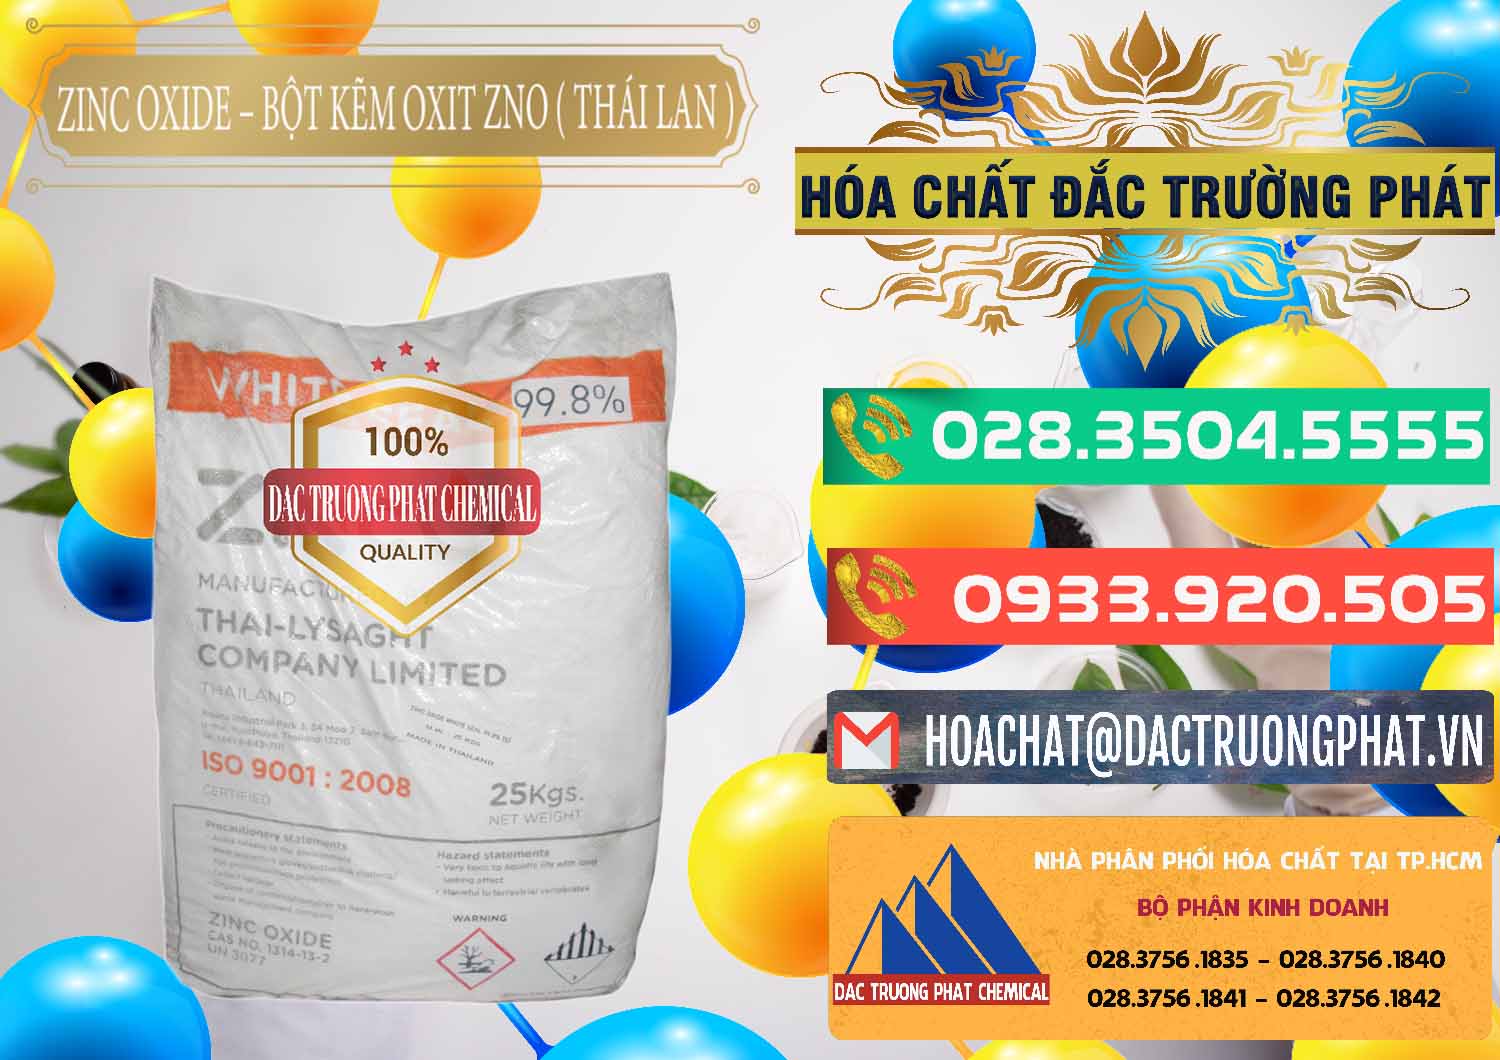 Cty chuyên kinh doanh và bán Zinc Oxide - Bột Kẽm Oxit ZNO Thái Lan Thailand - 0181 - Cty chuyên cung cấp ( nhập khẩu ) hóa chất tại TP.HCM - congtyhoachat.com.vn